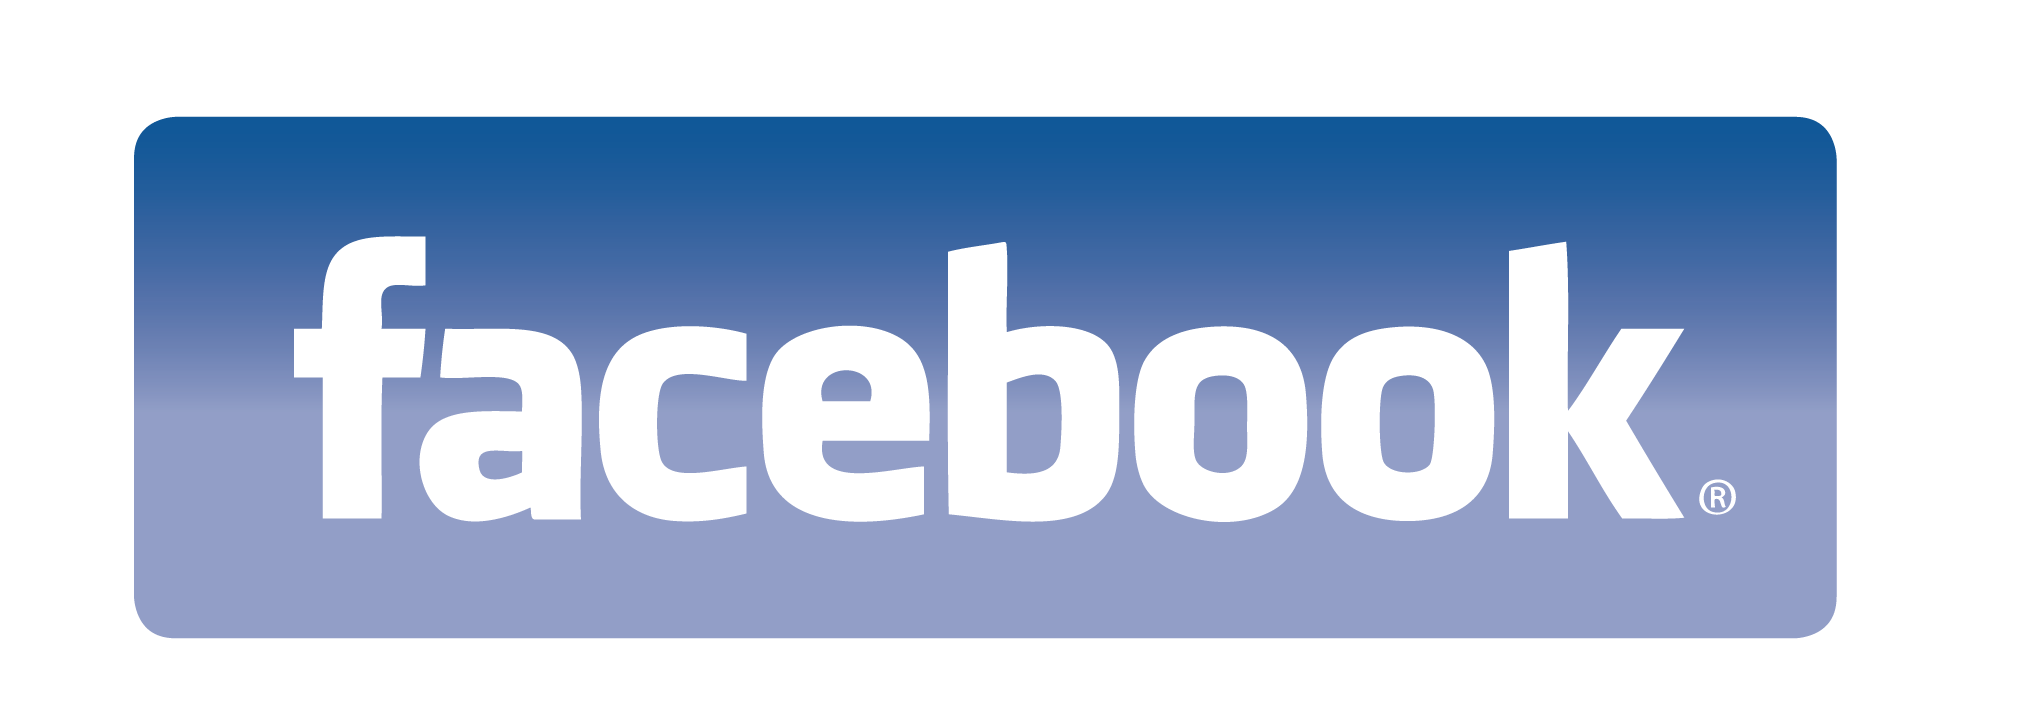 facebook_logo-1